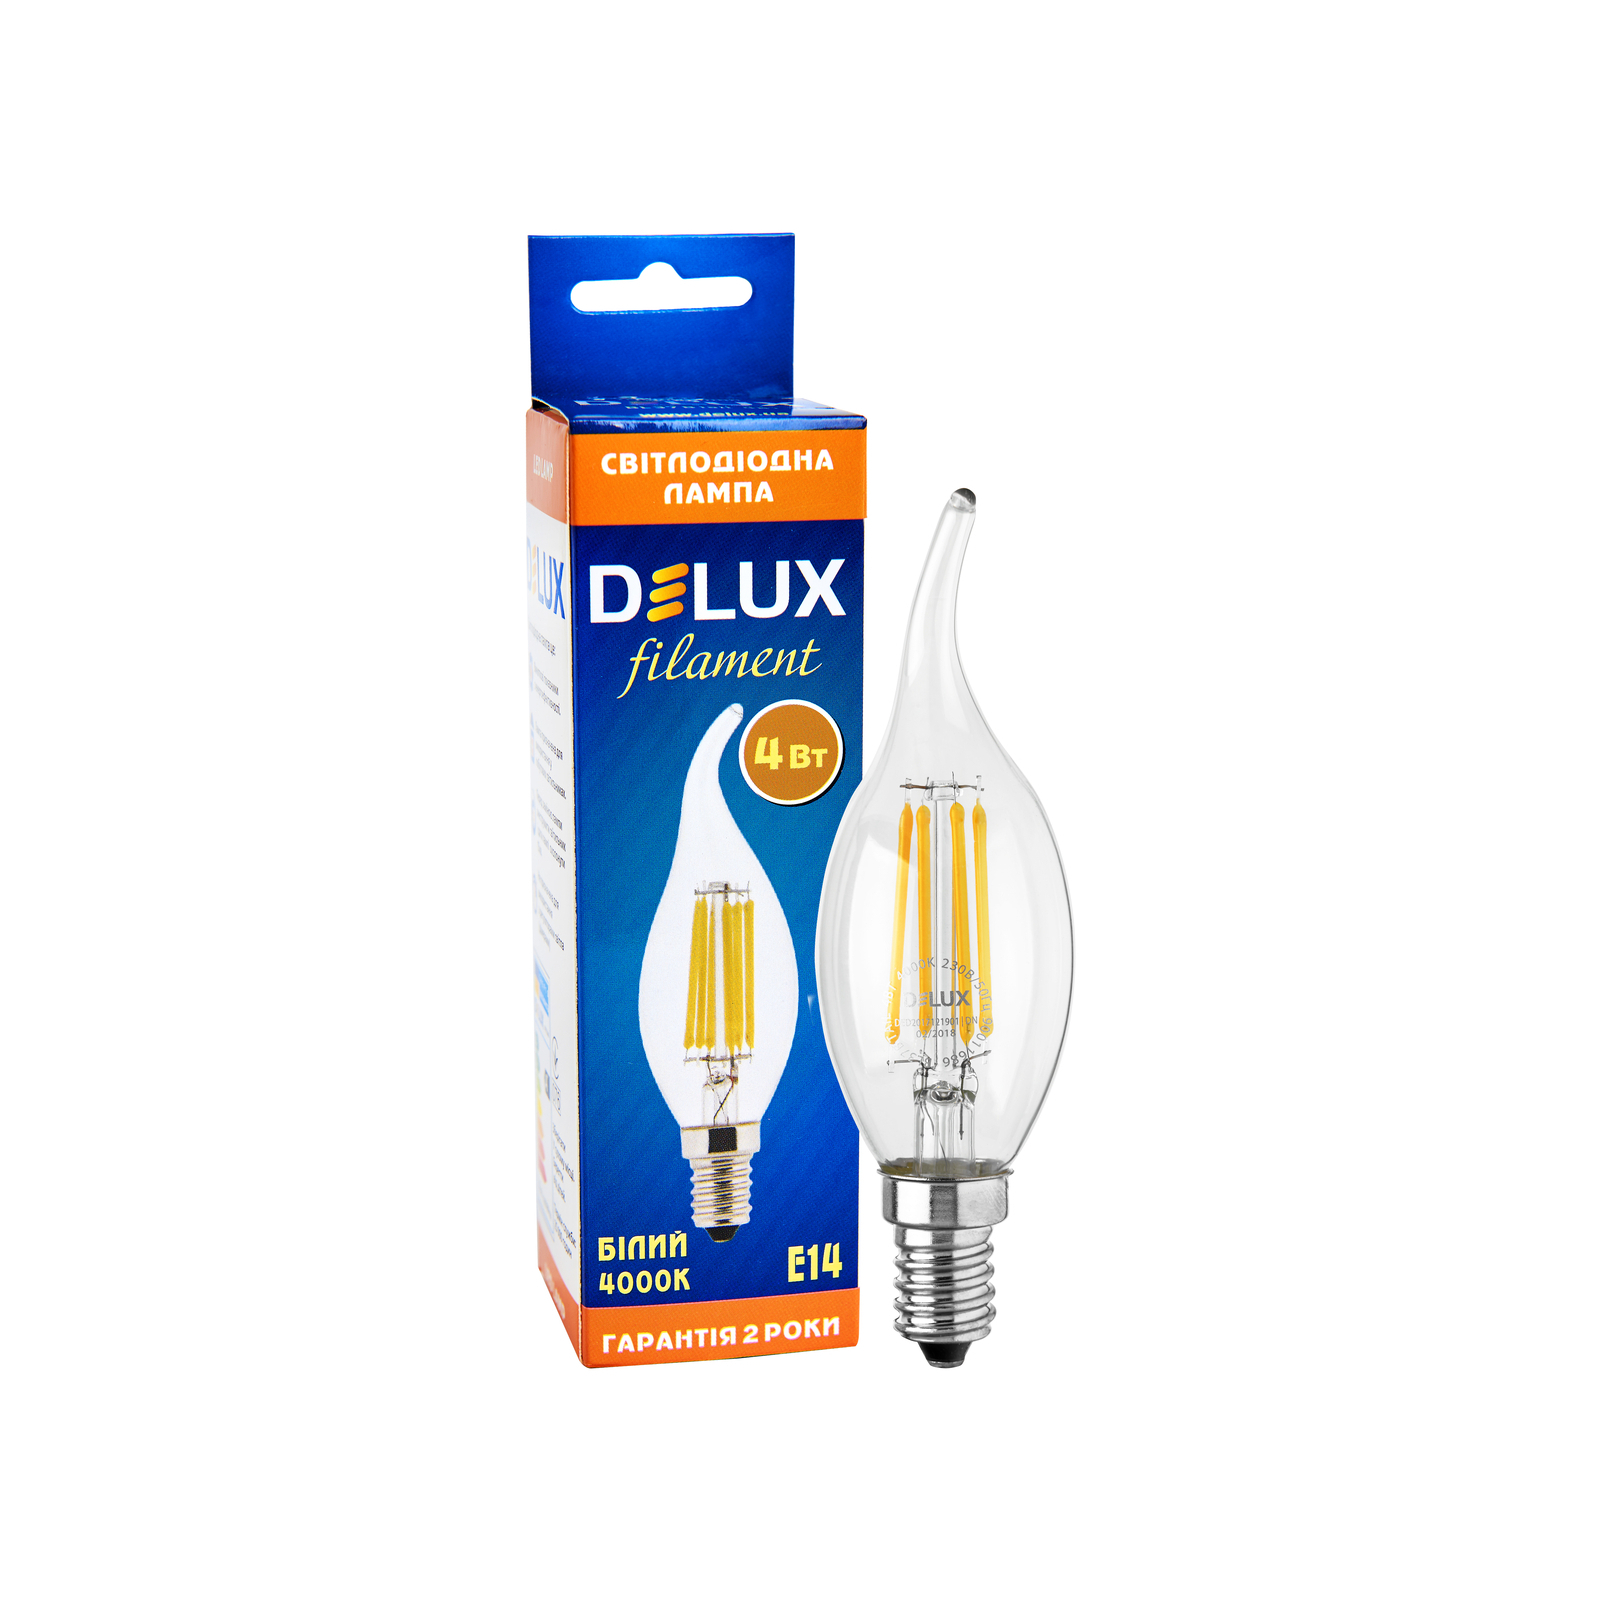 Лампочка Delux BL37B 4 Вт tail 4000K 220В E14 filament (90011686) изображение 4